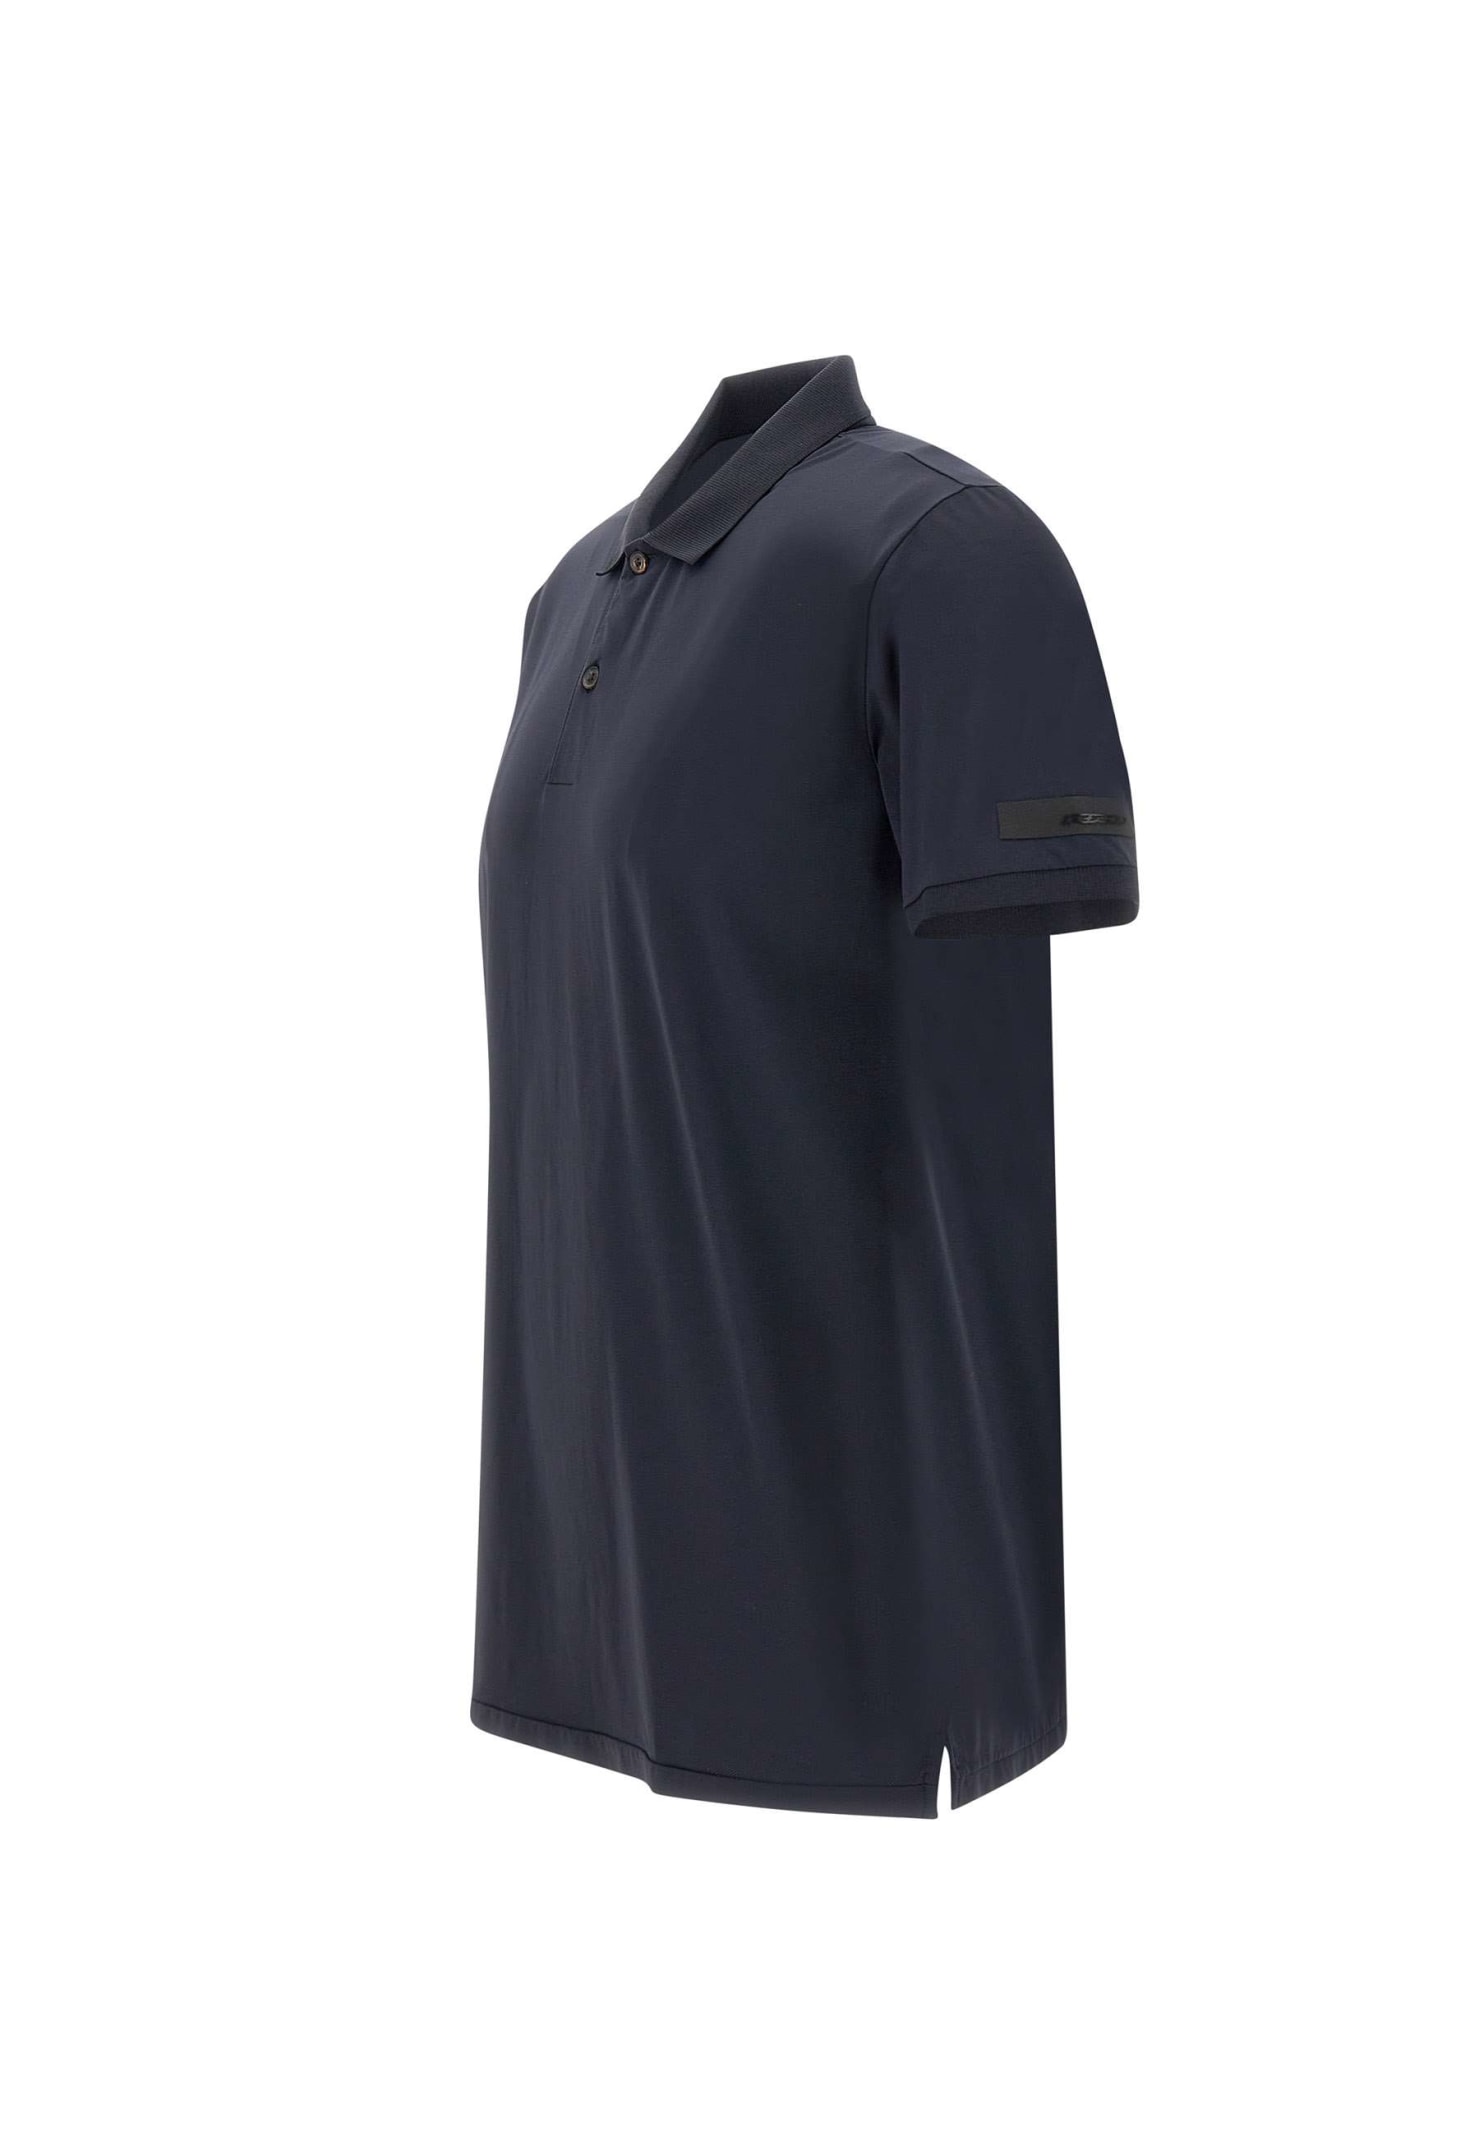 Shop Rrd - Roberto Ricci Design Gdy Cotton Oxford Polo Shirt In Blue